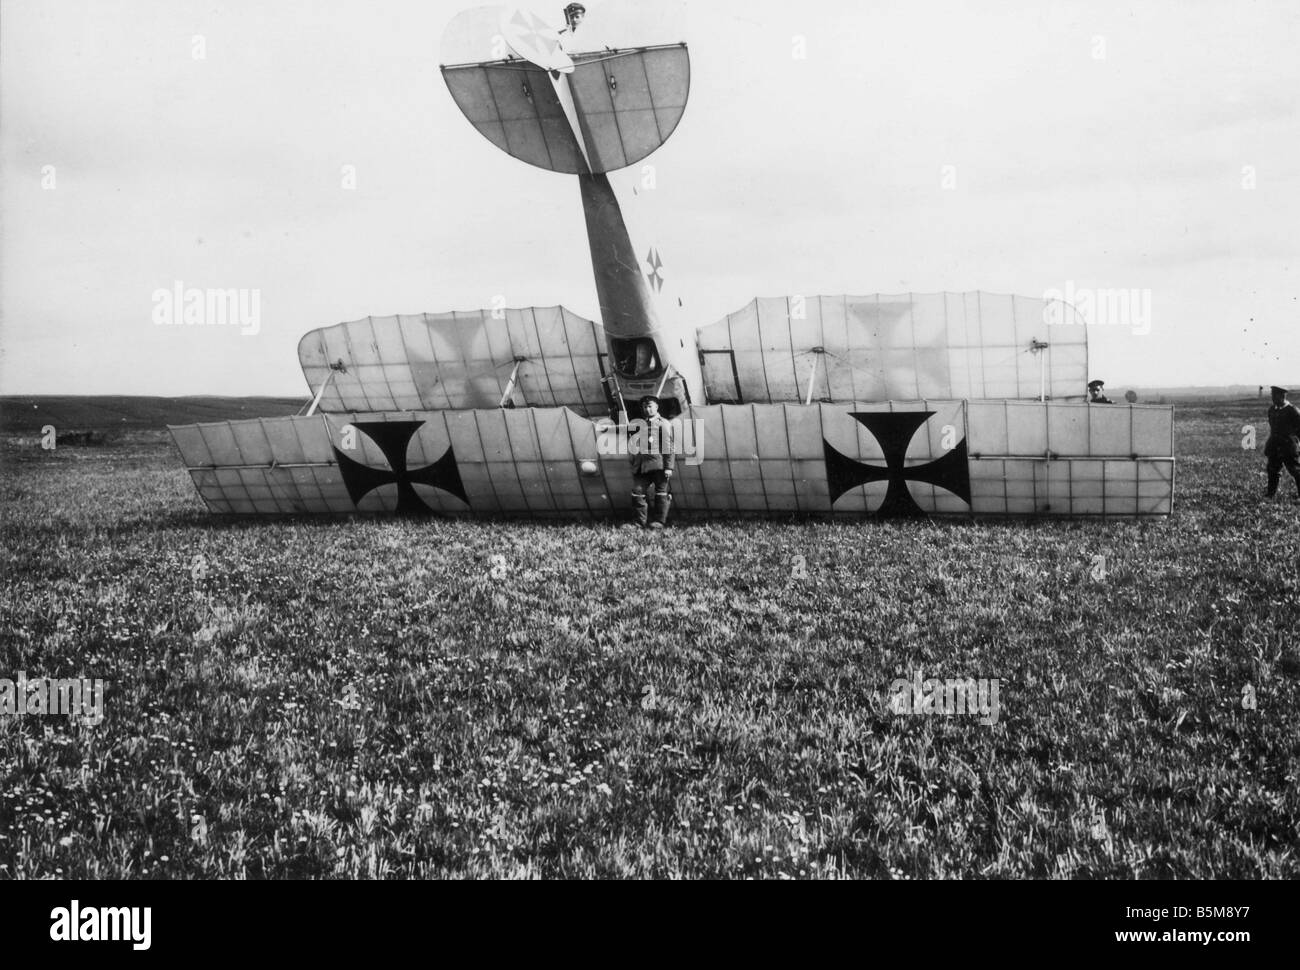 La PREMIÈRE GUERRE MONDIALE avion Aviatik allemand 1917 Histoire Première Guerre mondiale guerre aérienne un avion allemand Aviatik Typ C III après avoir perdu 1917 Photo Banque D'Images